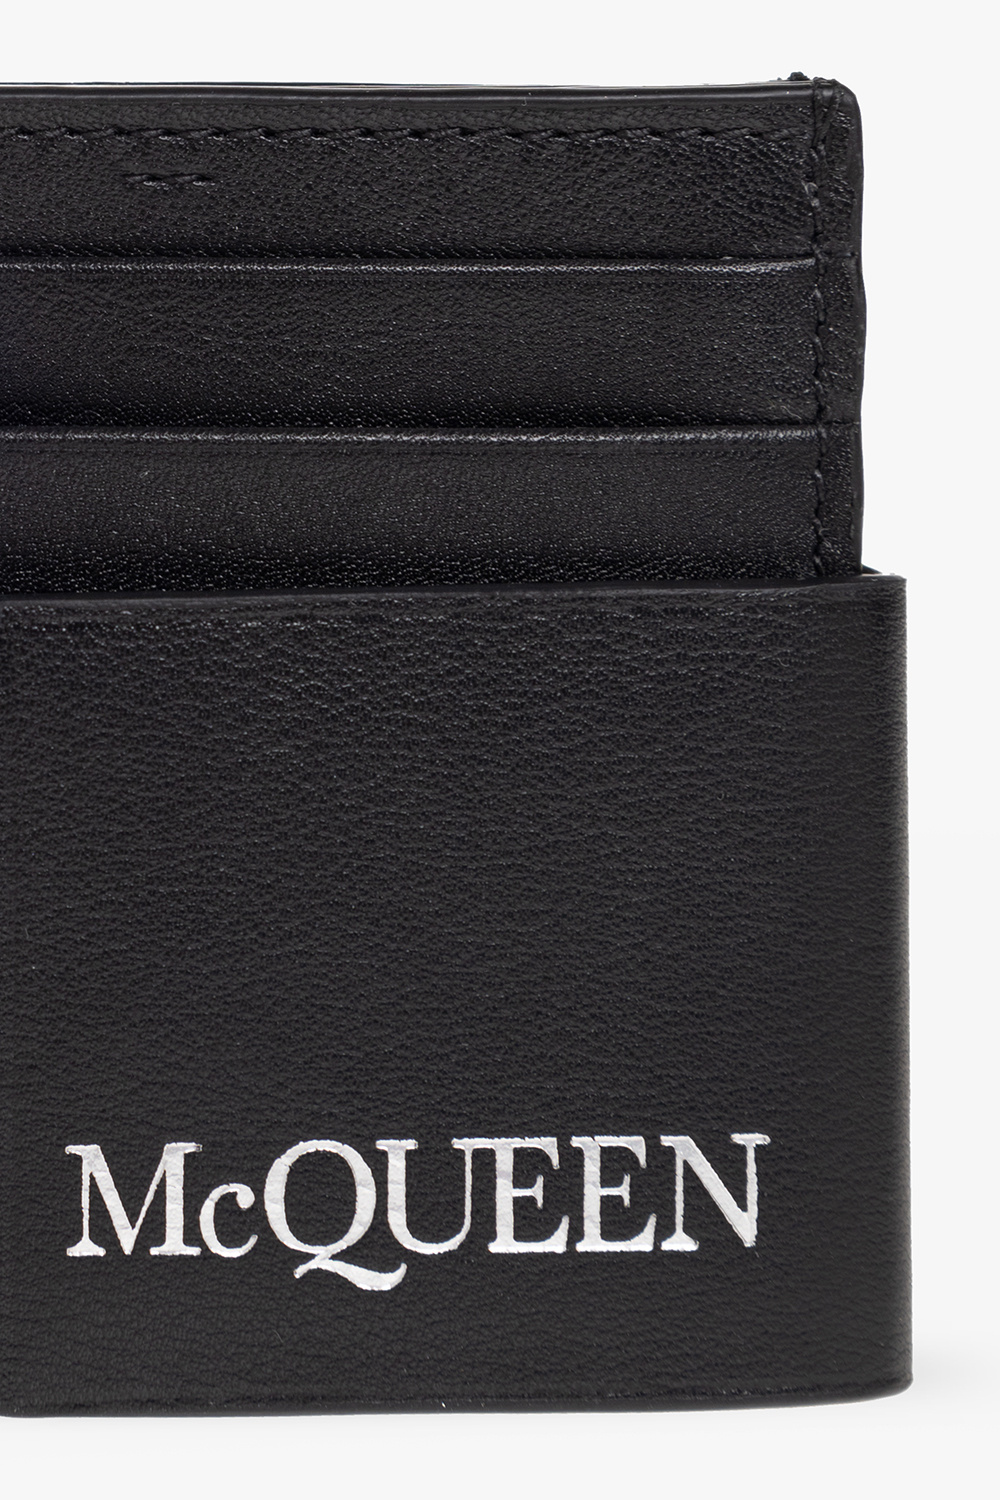 Alexander McQueen Two-piece card card case